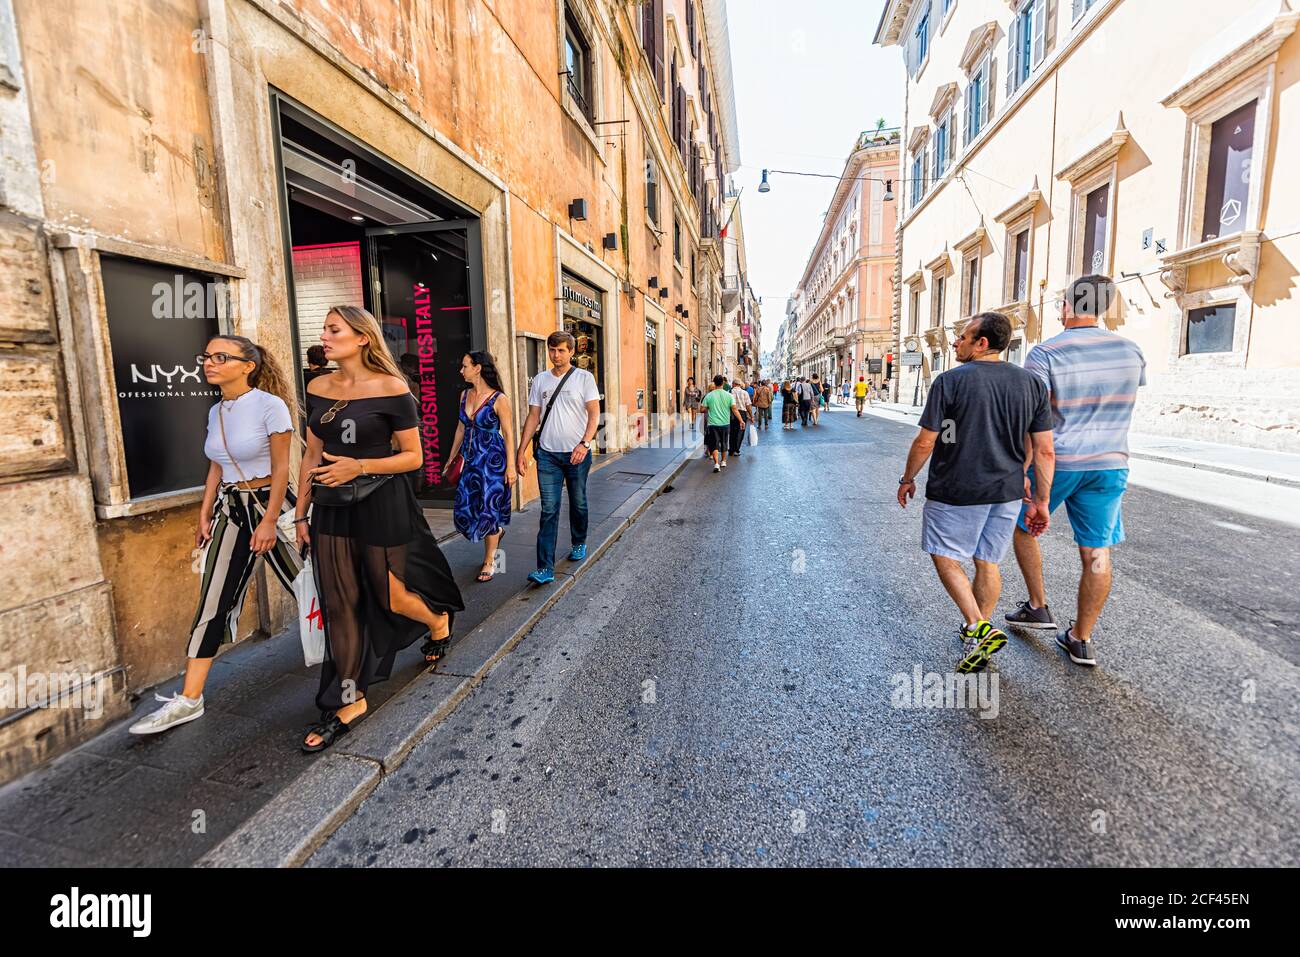 Roma, Italia - 5 settembre 2018: Via italiana fuori nella città storica giorno di sole e segno per il negozio boutique Nyx con la gente shopping Foto Stock